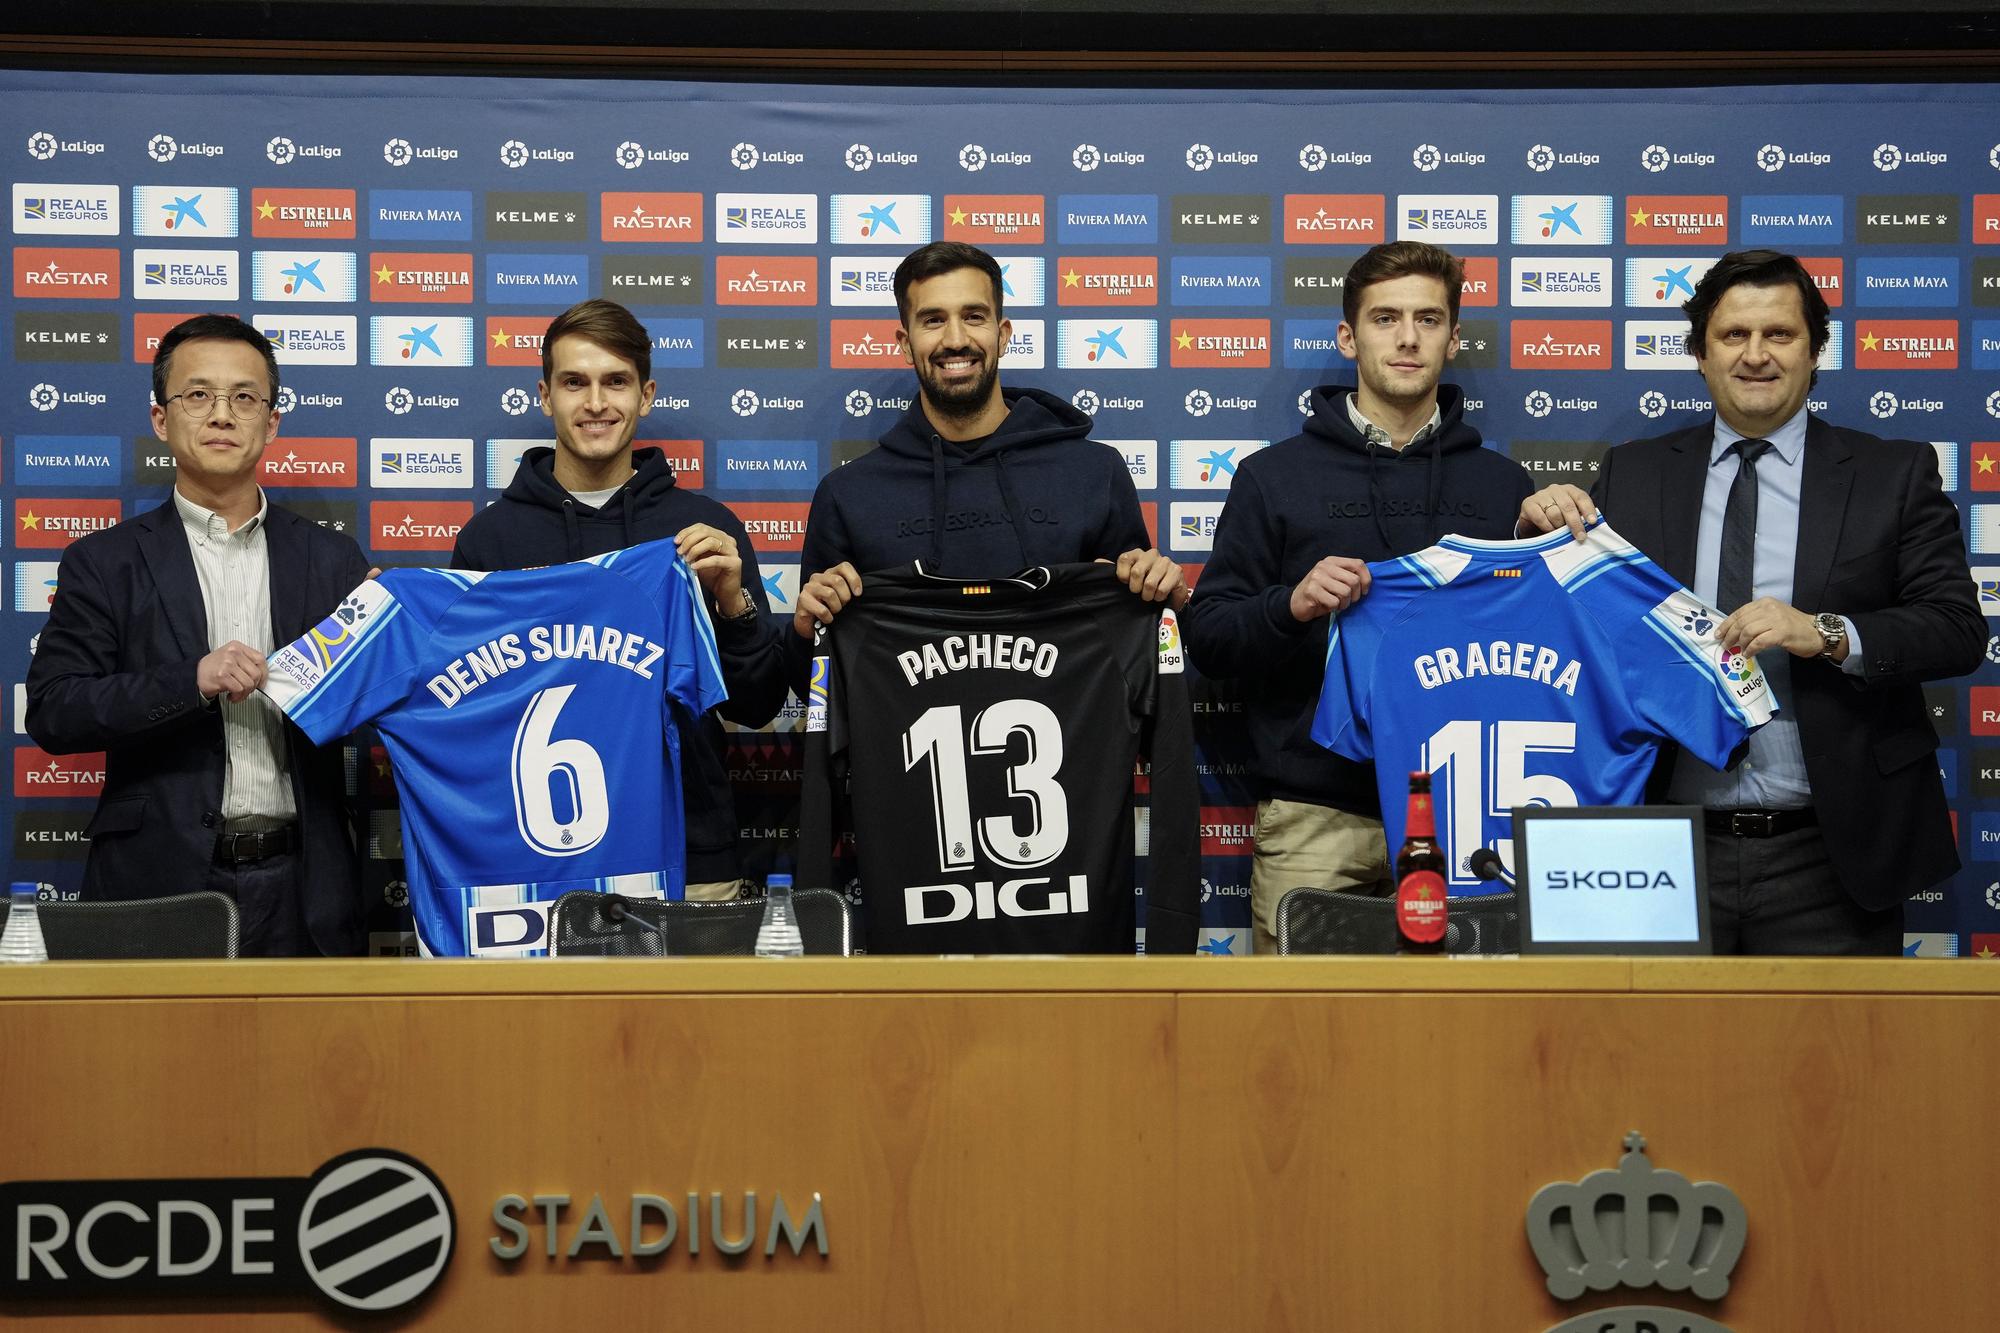 Presentación de Denis Suárez, Pacheco y Gragera, nuevos fichajes del Espanyol